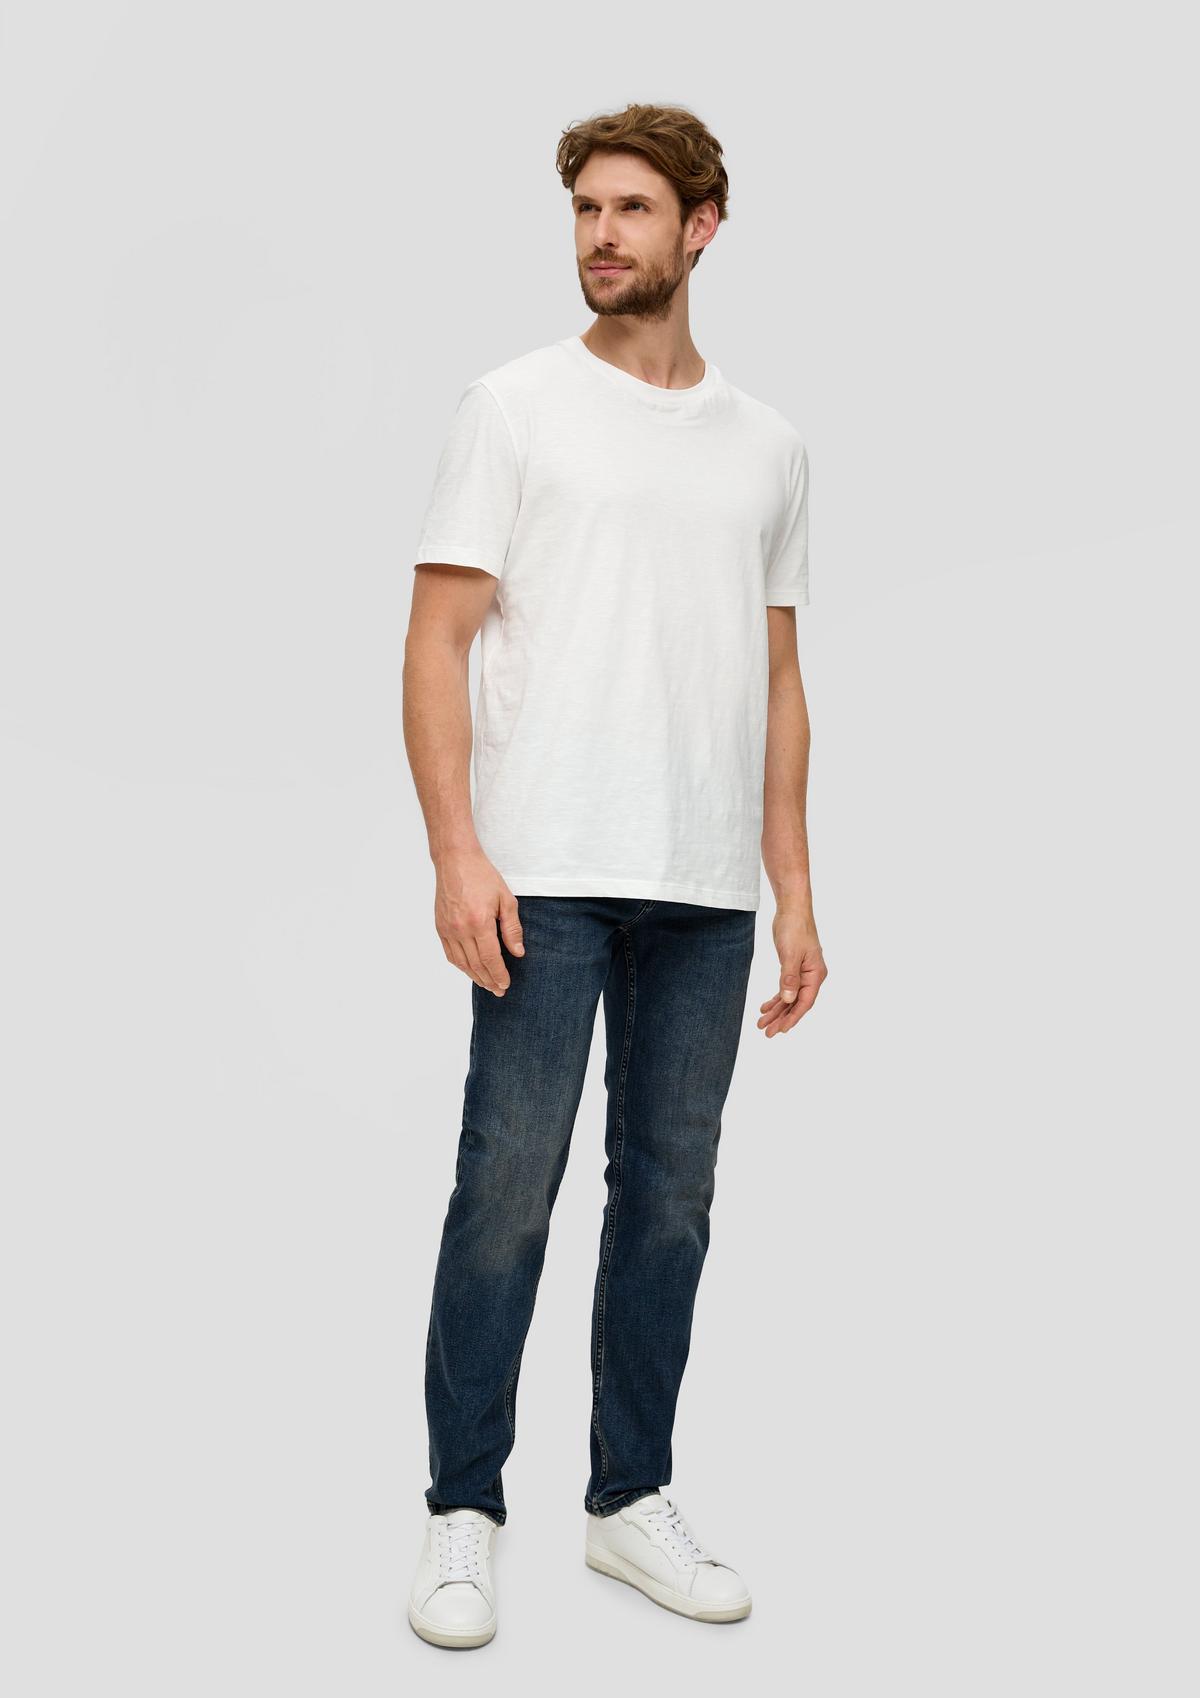 Nelio jeans / slim fit / mid rise / slim leg - blue | s.Oliver